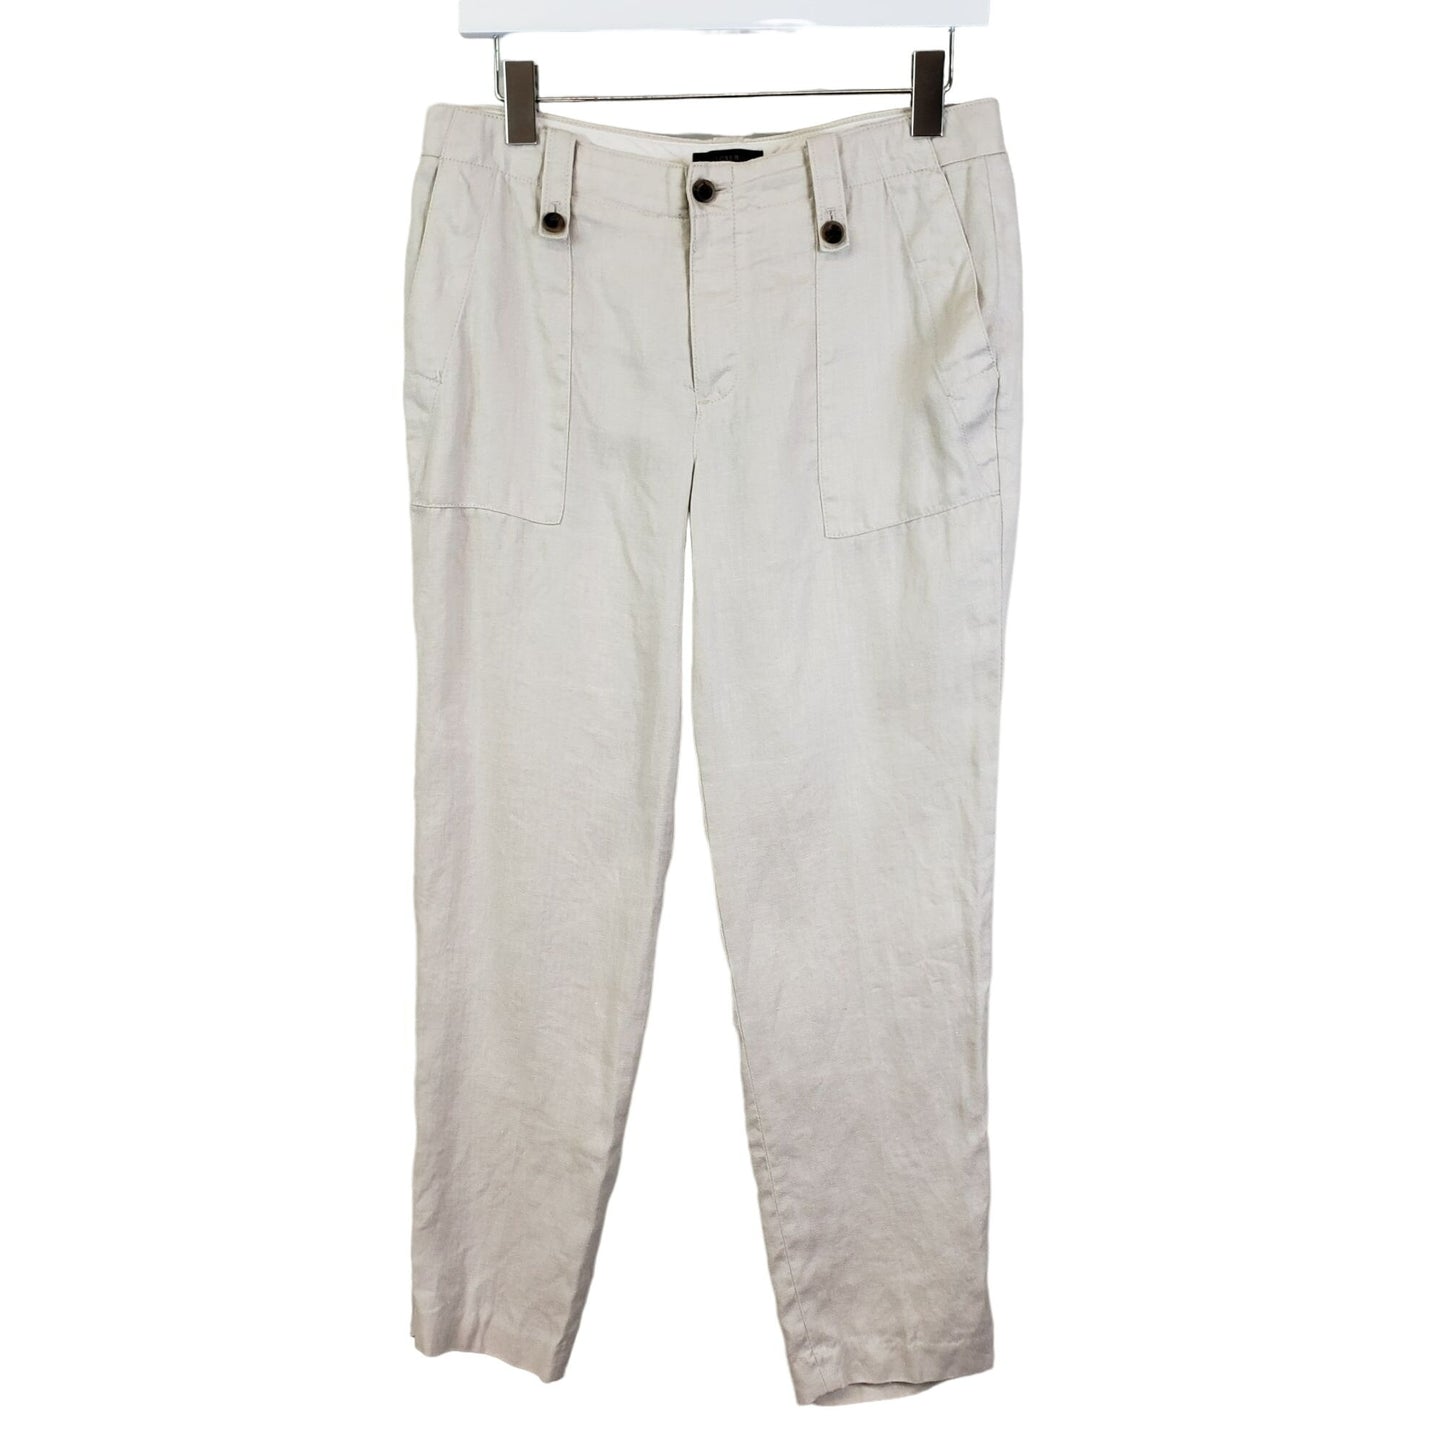 J. Crew Linen Pants Size 4